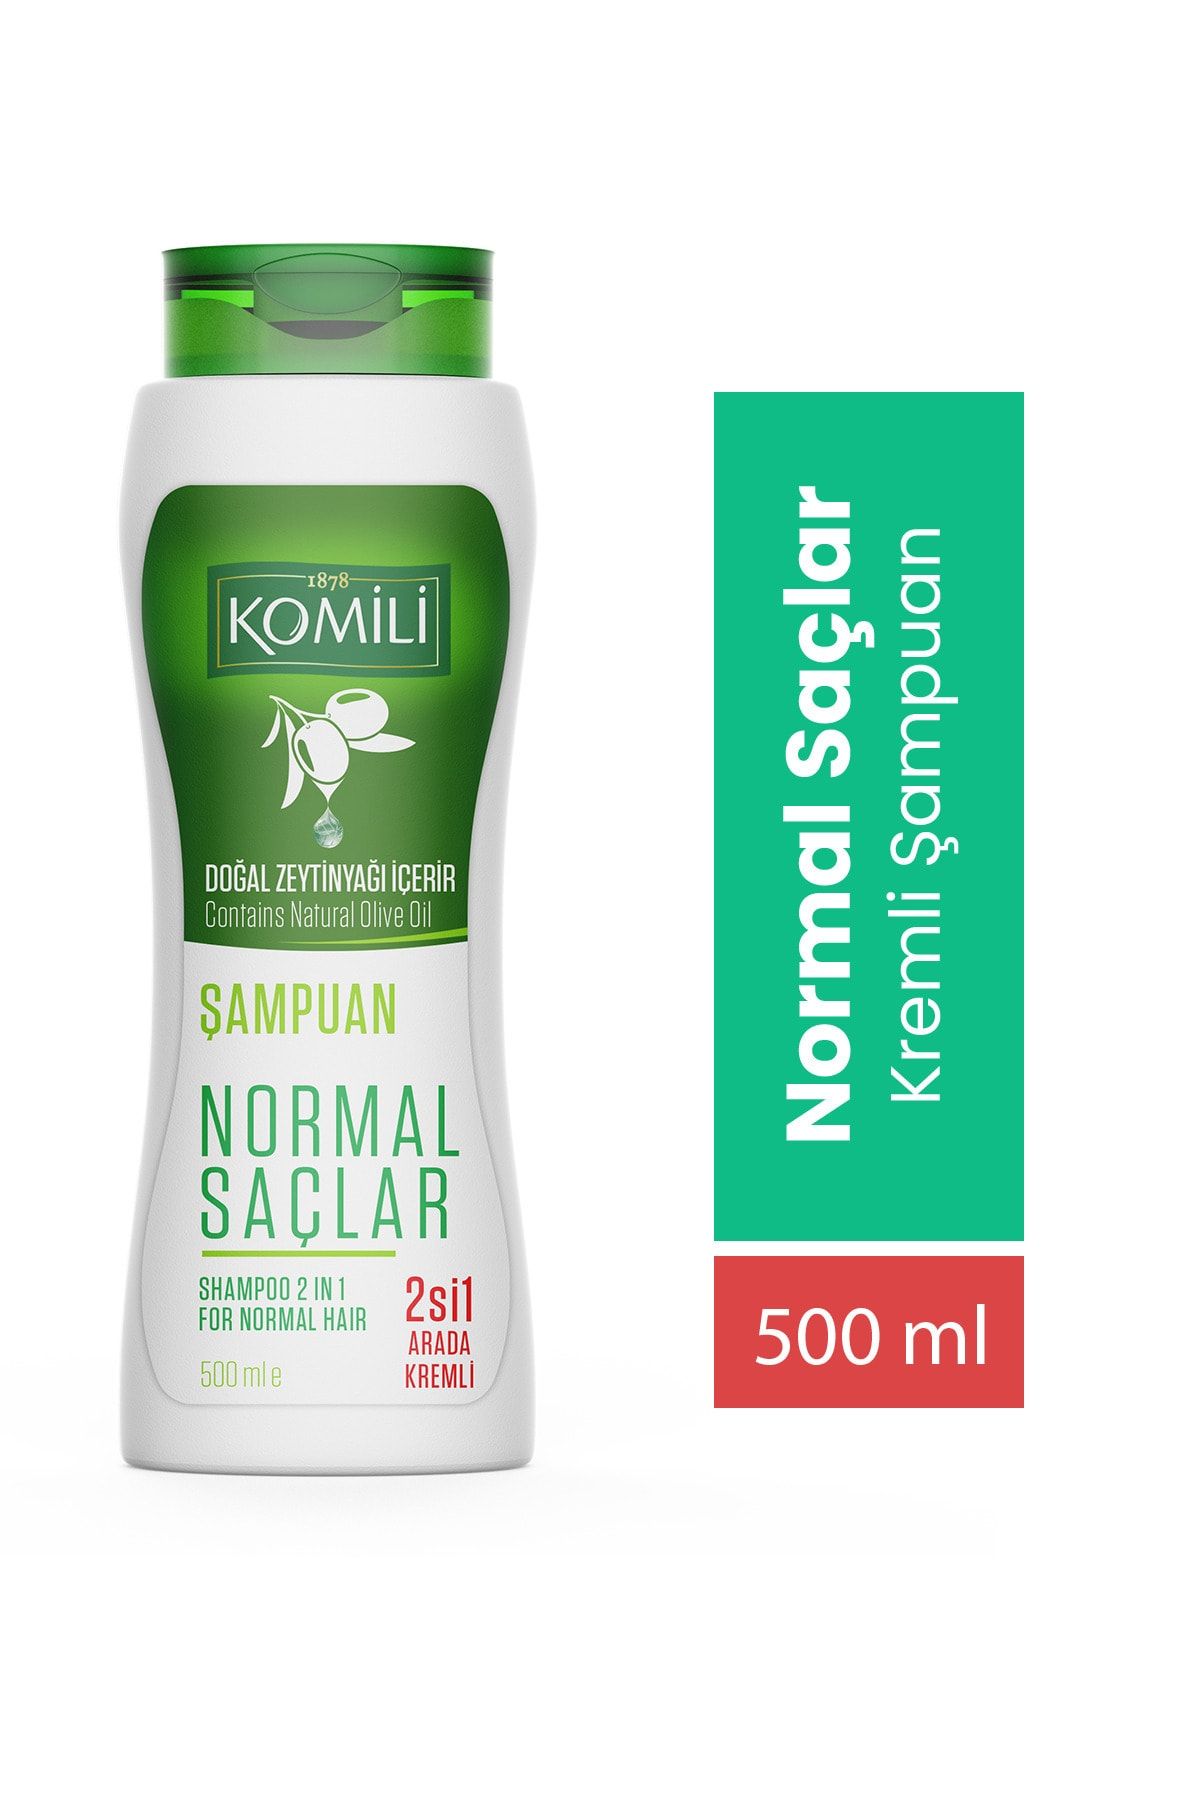 Komili Normal Saçlar İçin 2'si 1 Arada Kremli Vegan Temel Bakım Şampuanı - 500 ML